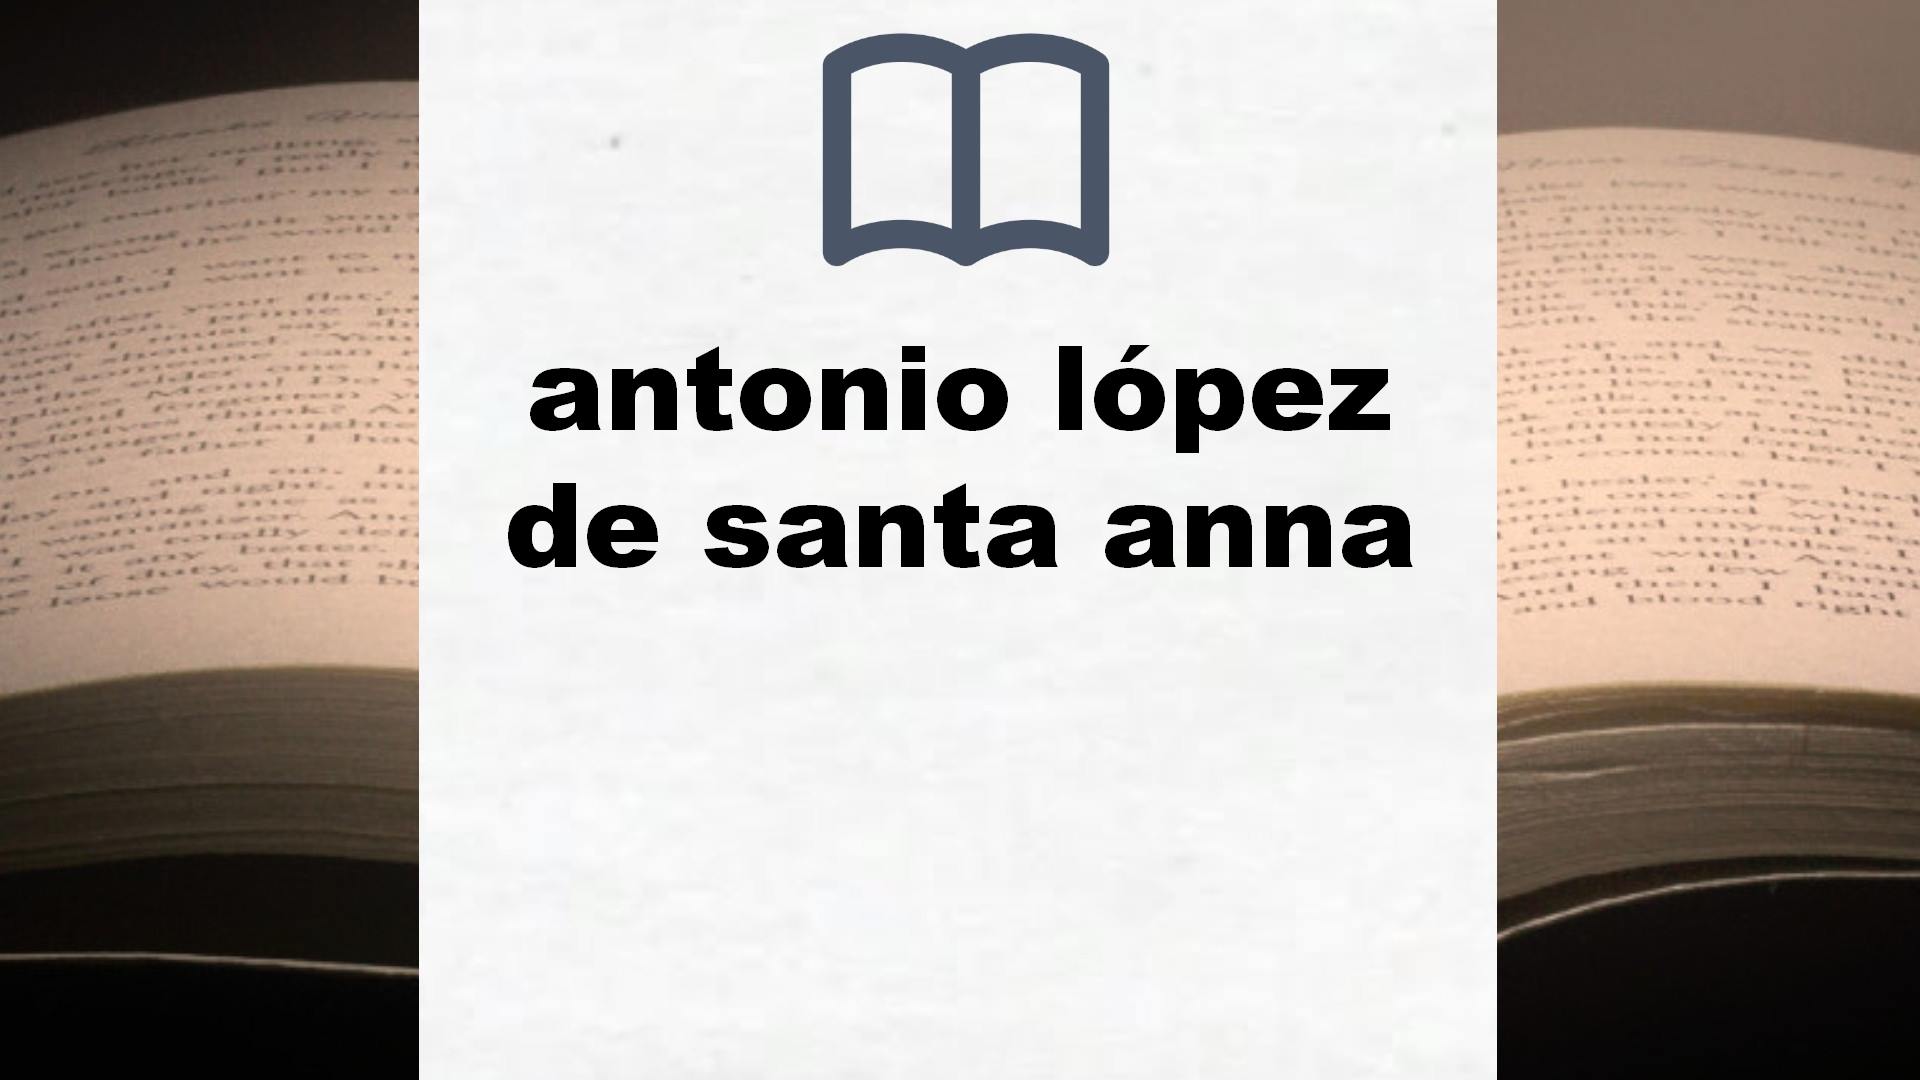 Libros sobre antonio lópez de santa anna